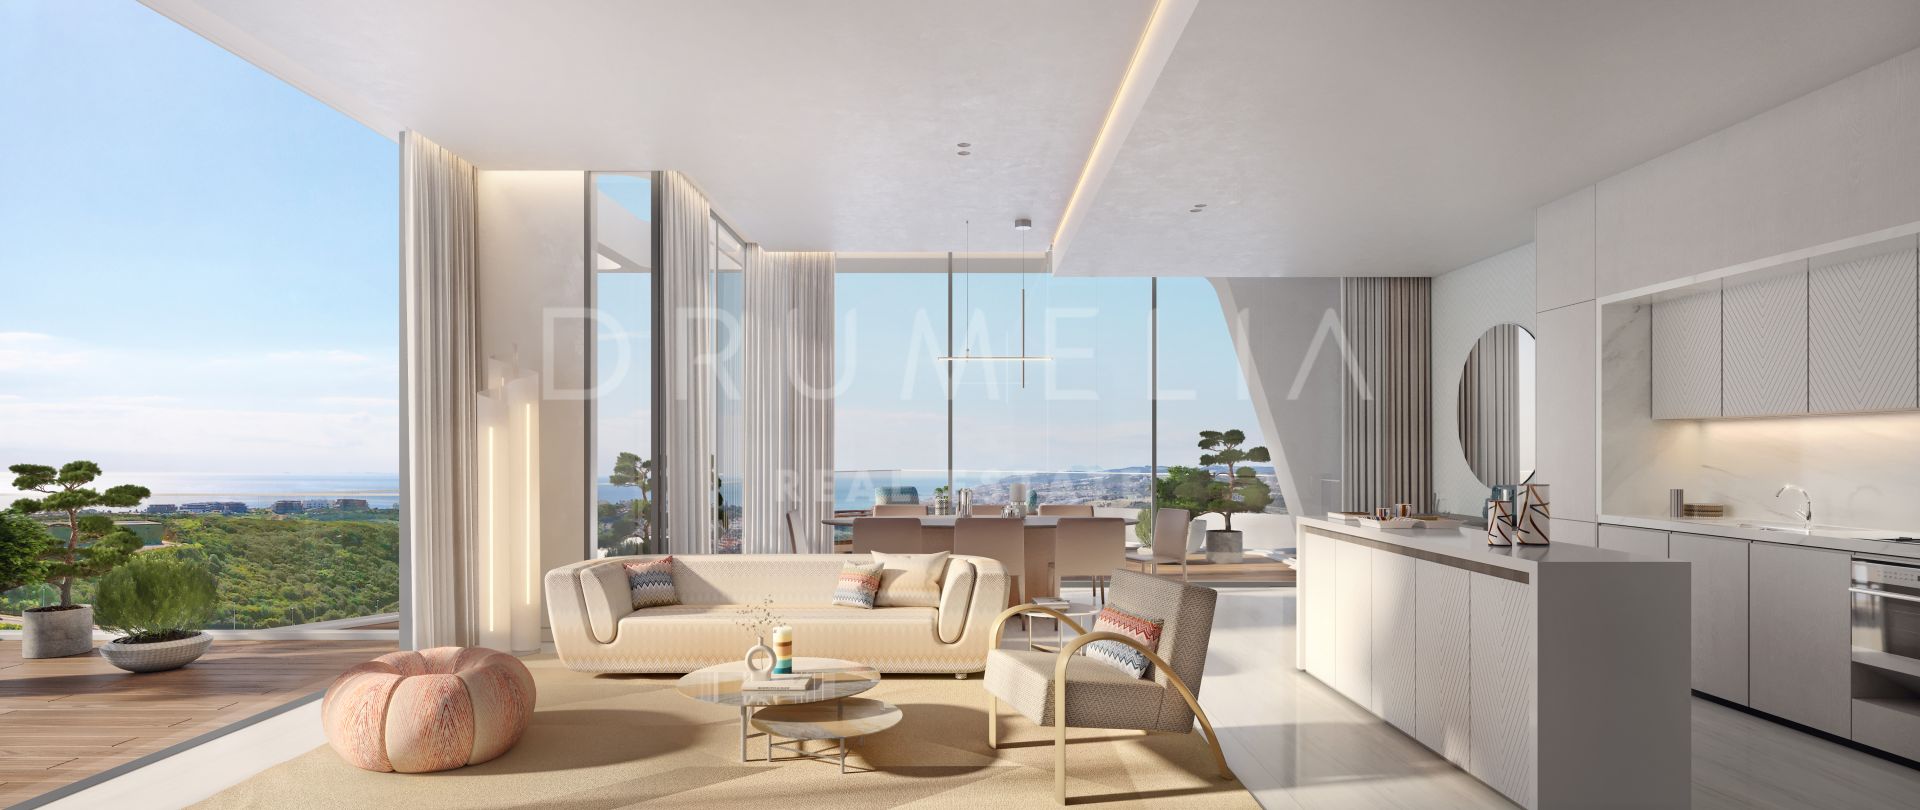 Extraordinario apartamento de diseño moderno de lujo a estrenar con vistas al mar en Finca Cortesin, Casares